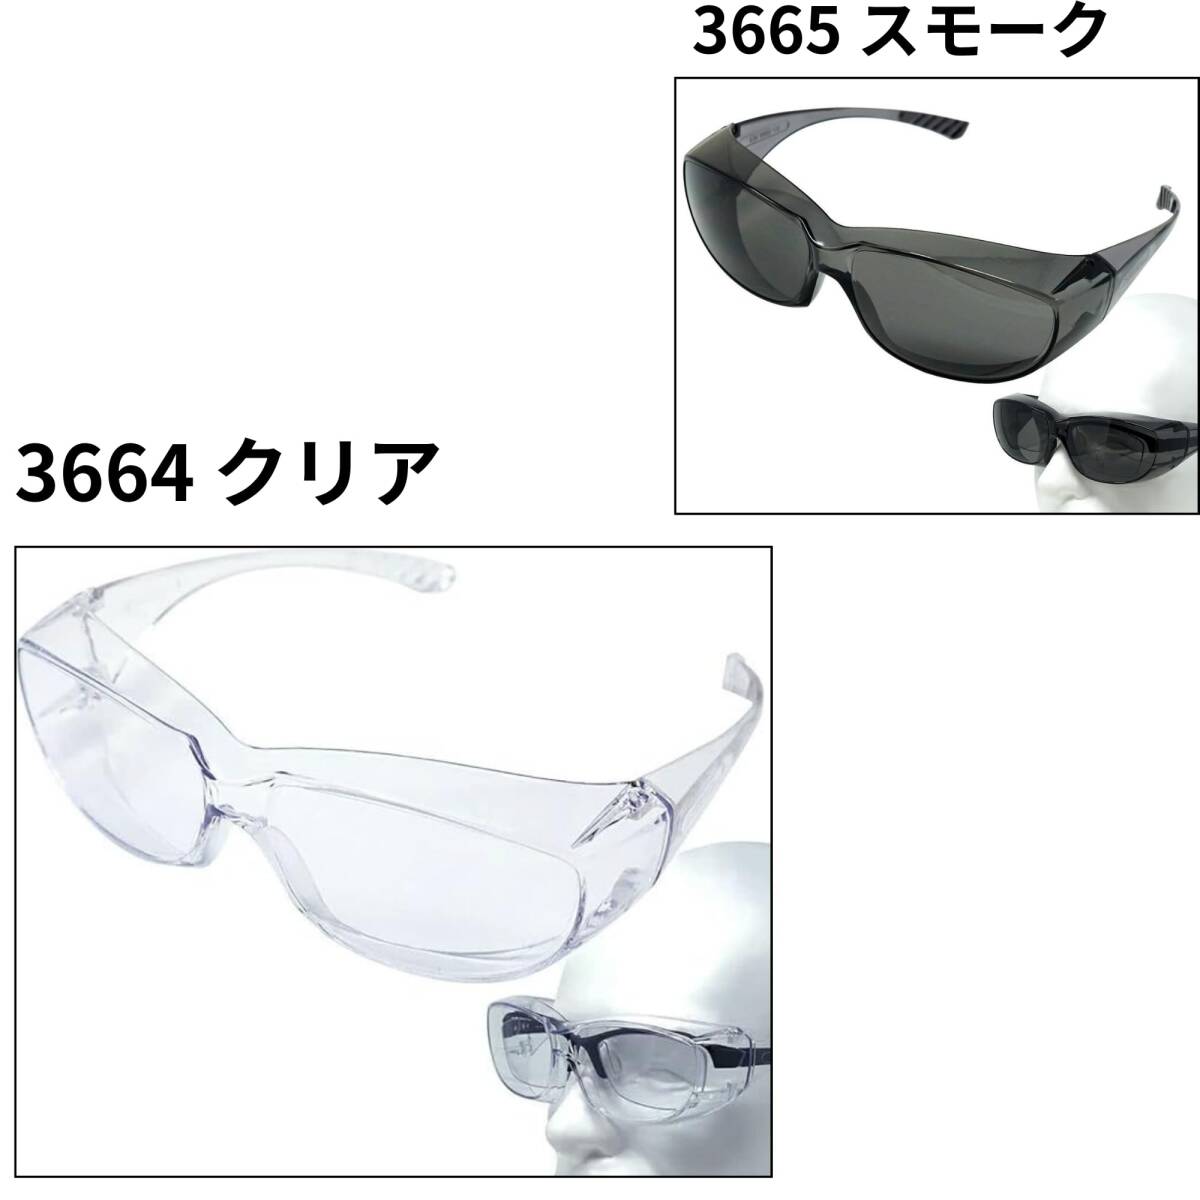 [POLARIS] очки. сверху ..... защитные очки при аллергии на пыльцу помутнение трудно защита очки over стакан тип безопасность стакан медицинская помощь для защитные очки 